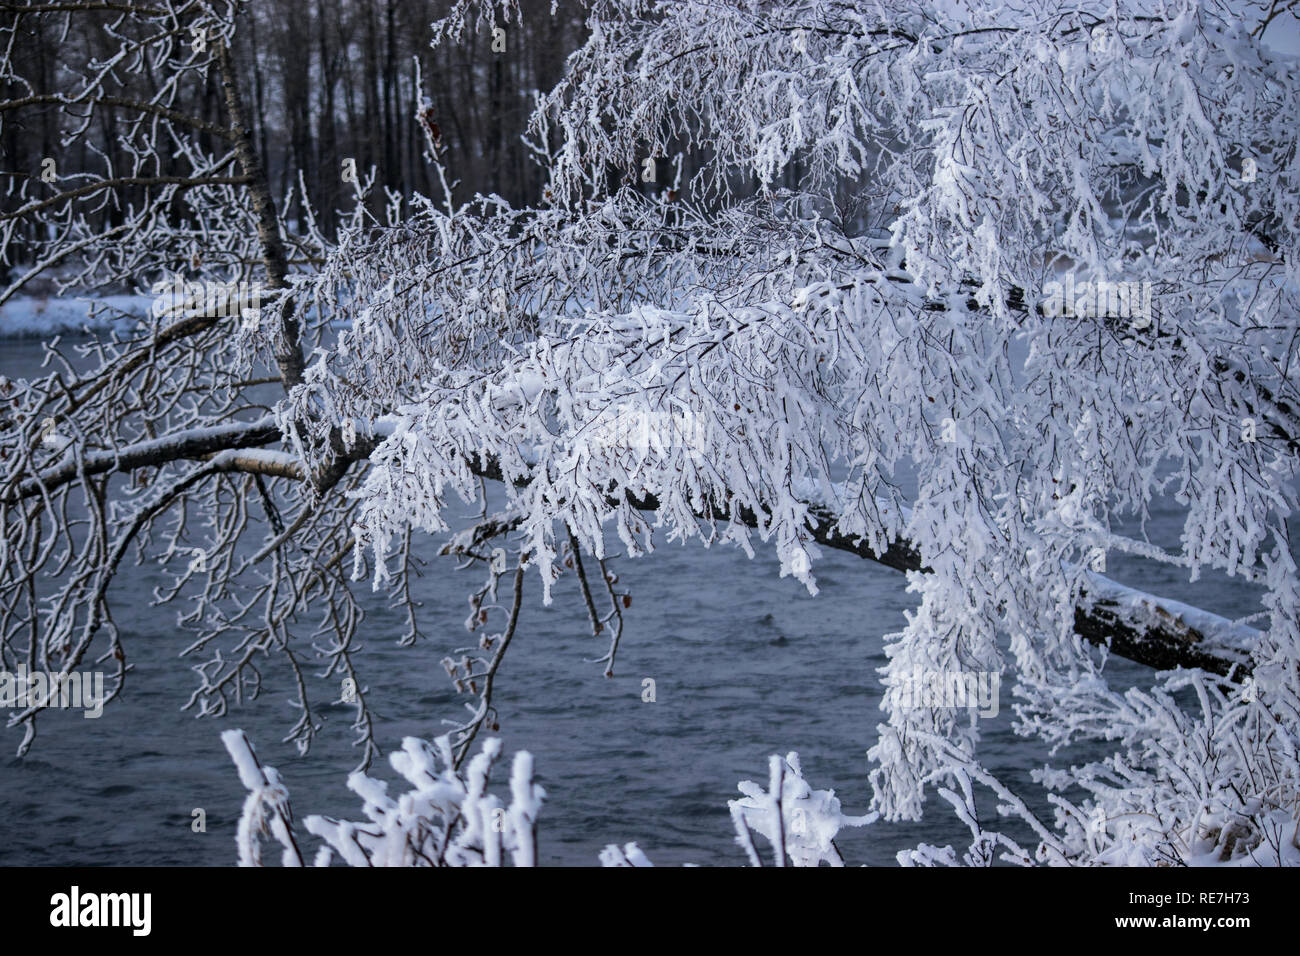 Mirando a través del frío río Bow con nieve fresca en los árboles. Foto de stock